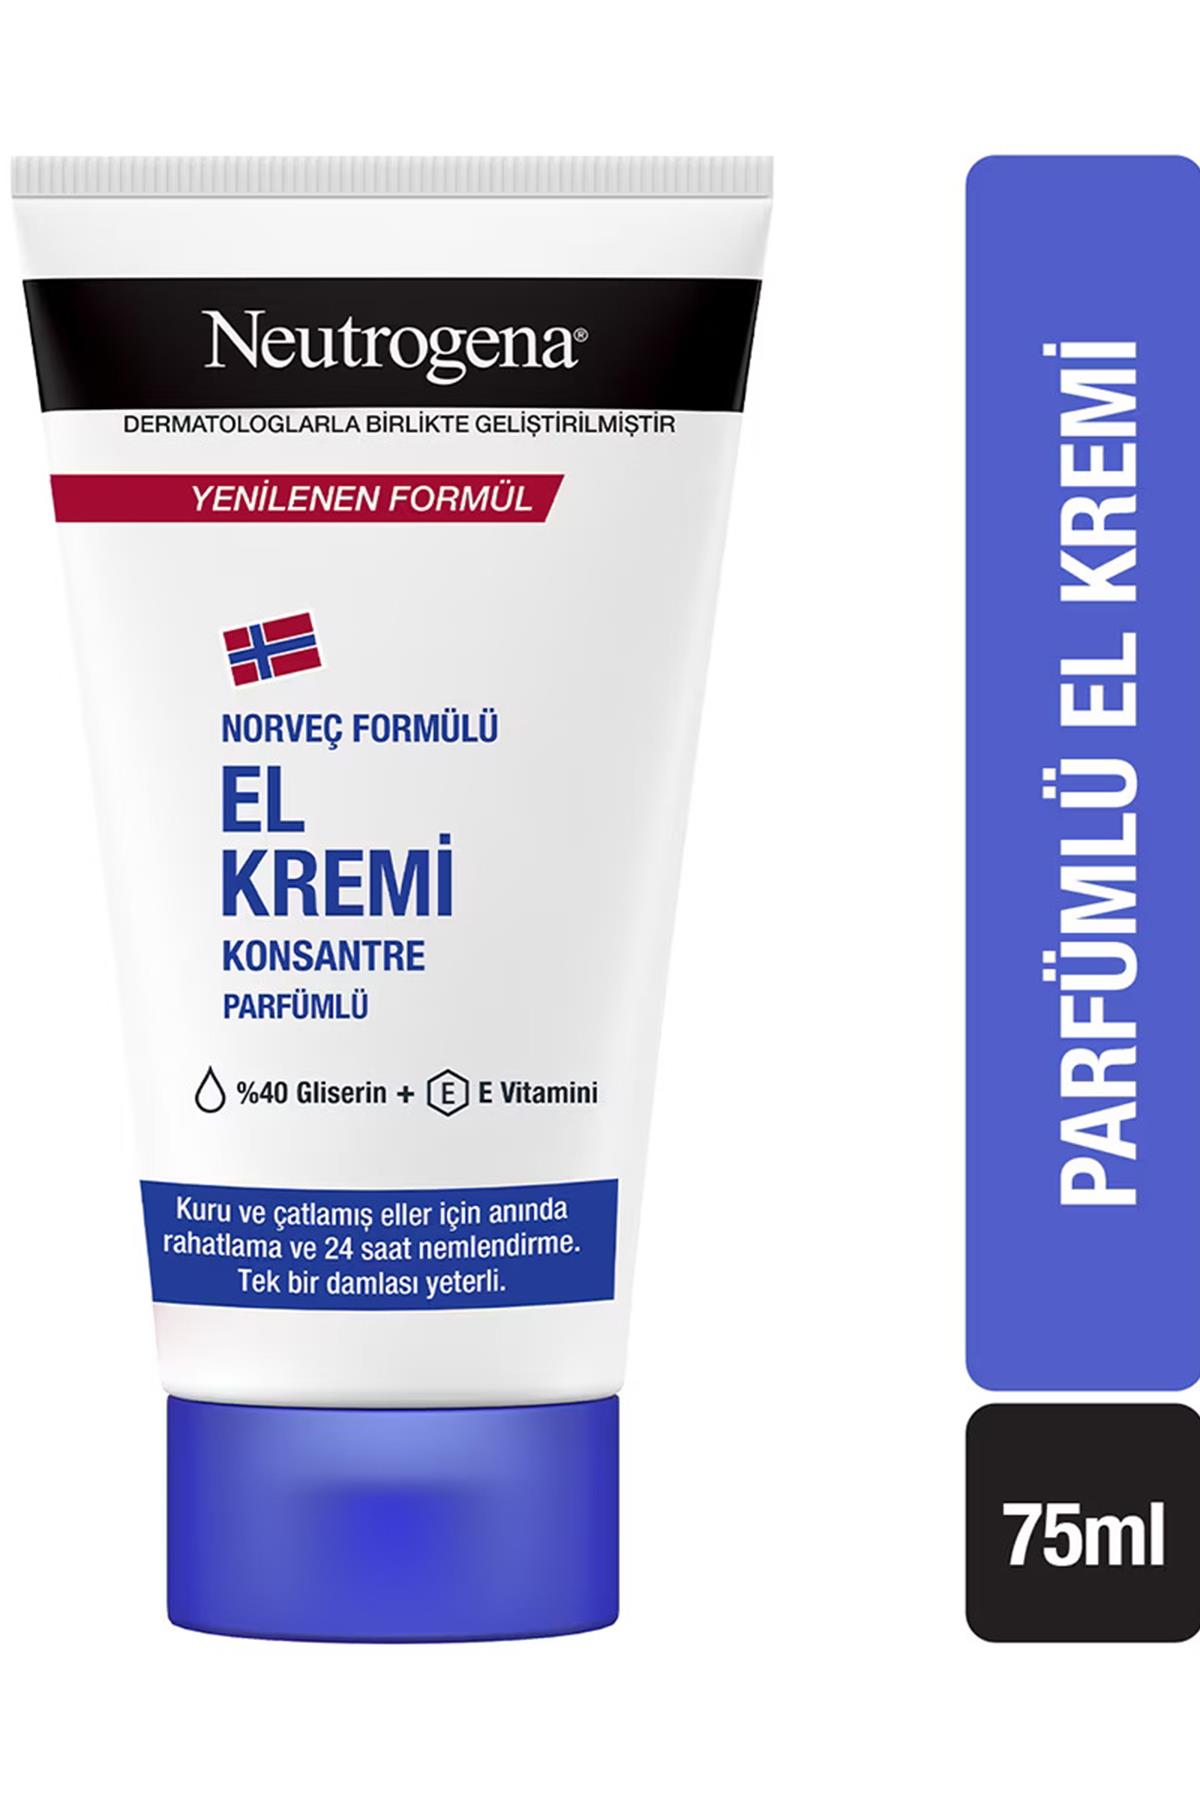 neutrogena-el-kremi-parfumlu-75-ml-5348-1.jpg